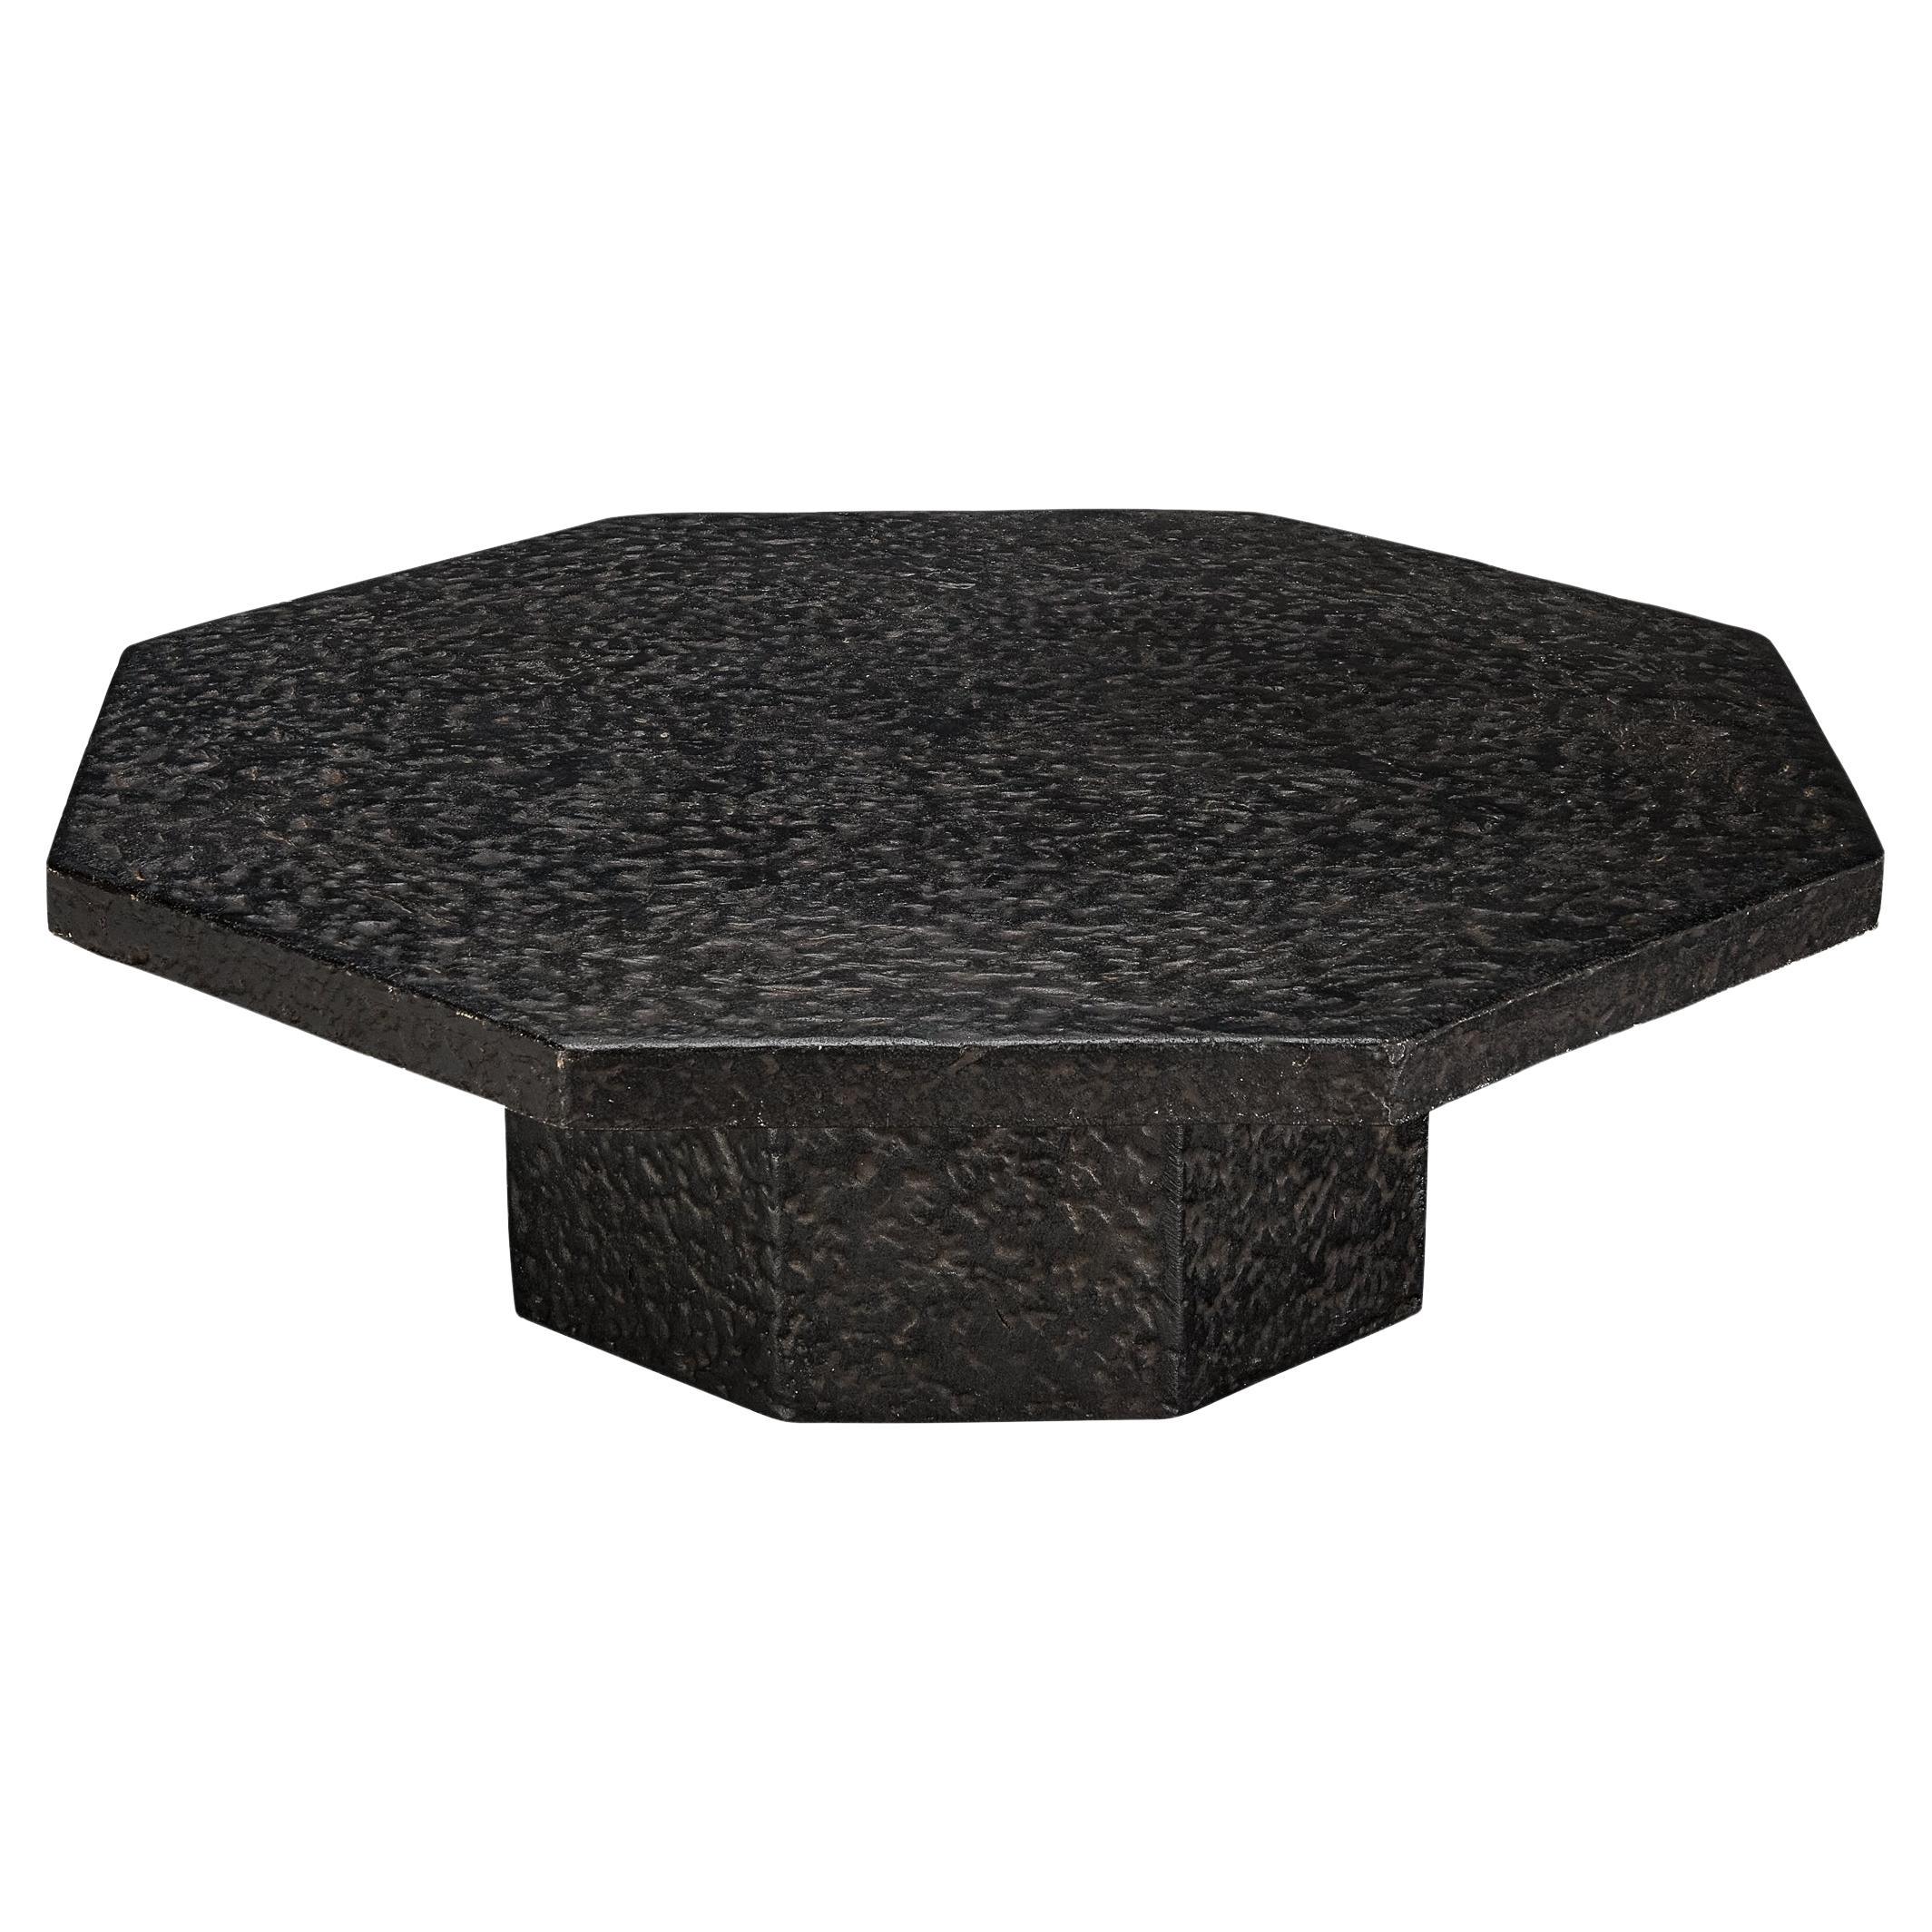 Brutalist Octagonal Coffee Table in Black Stone Look Resin 